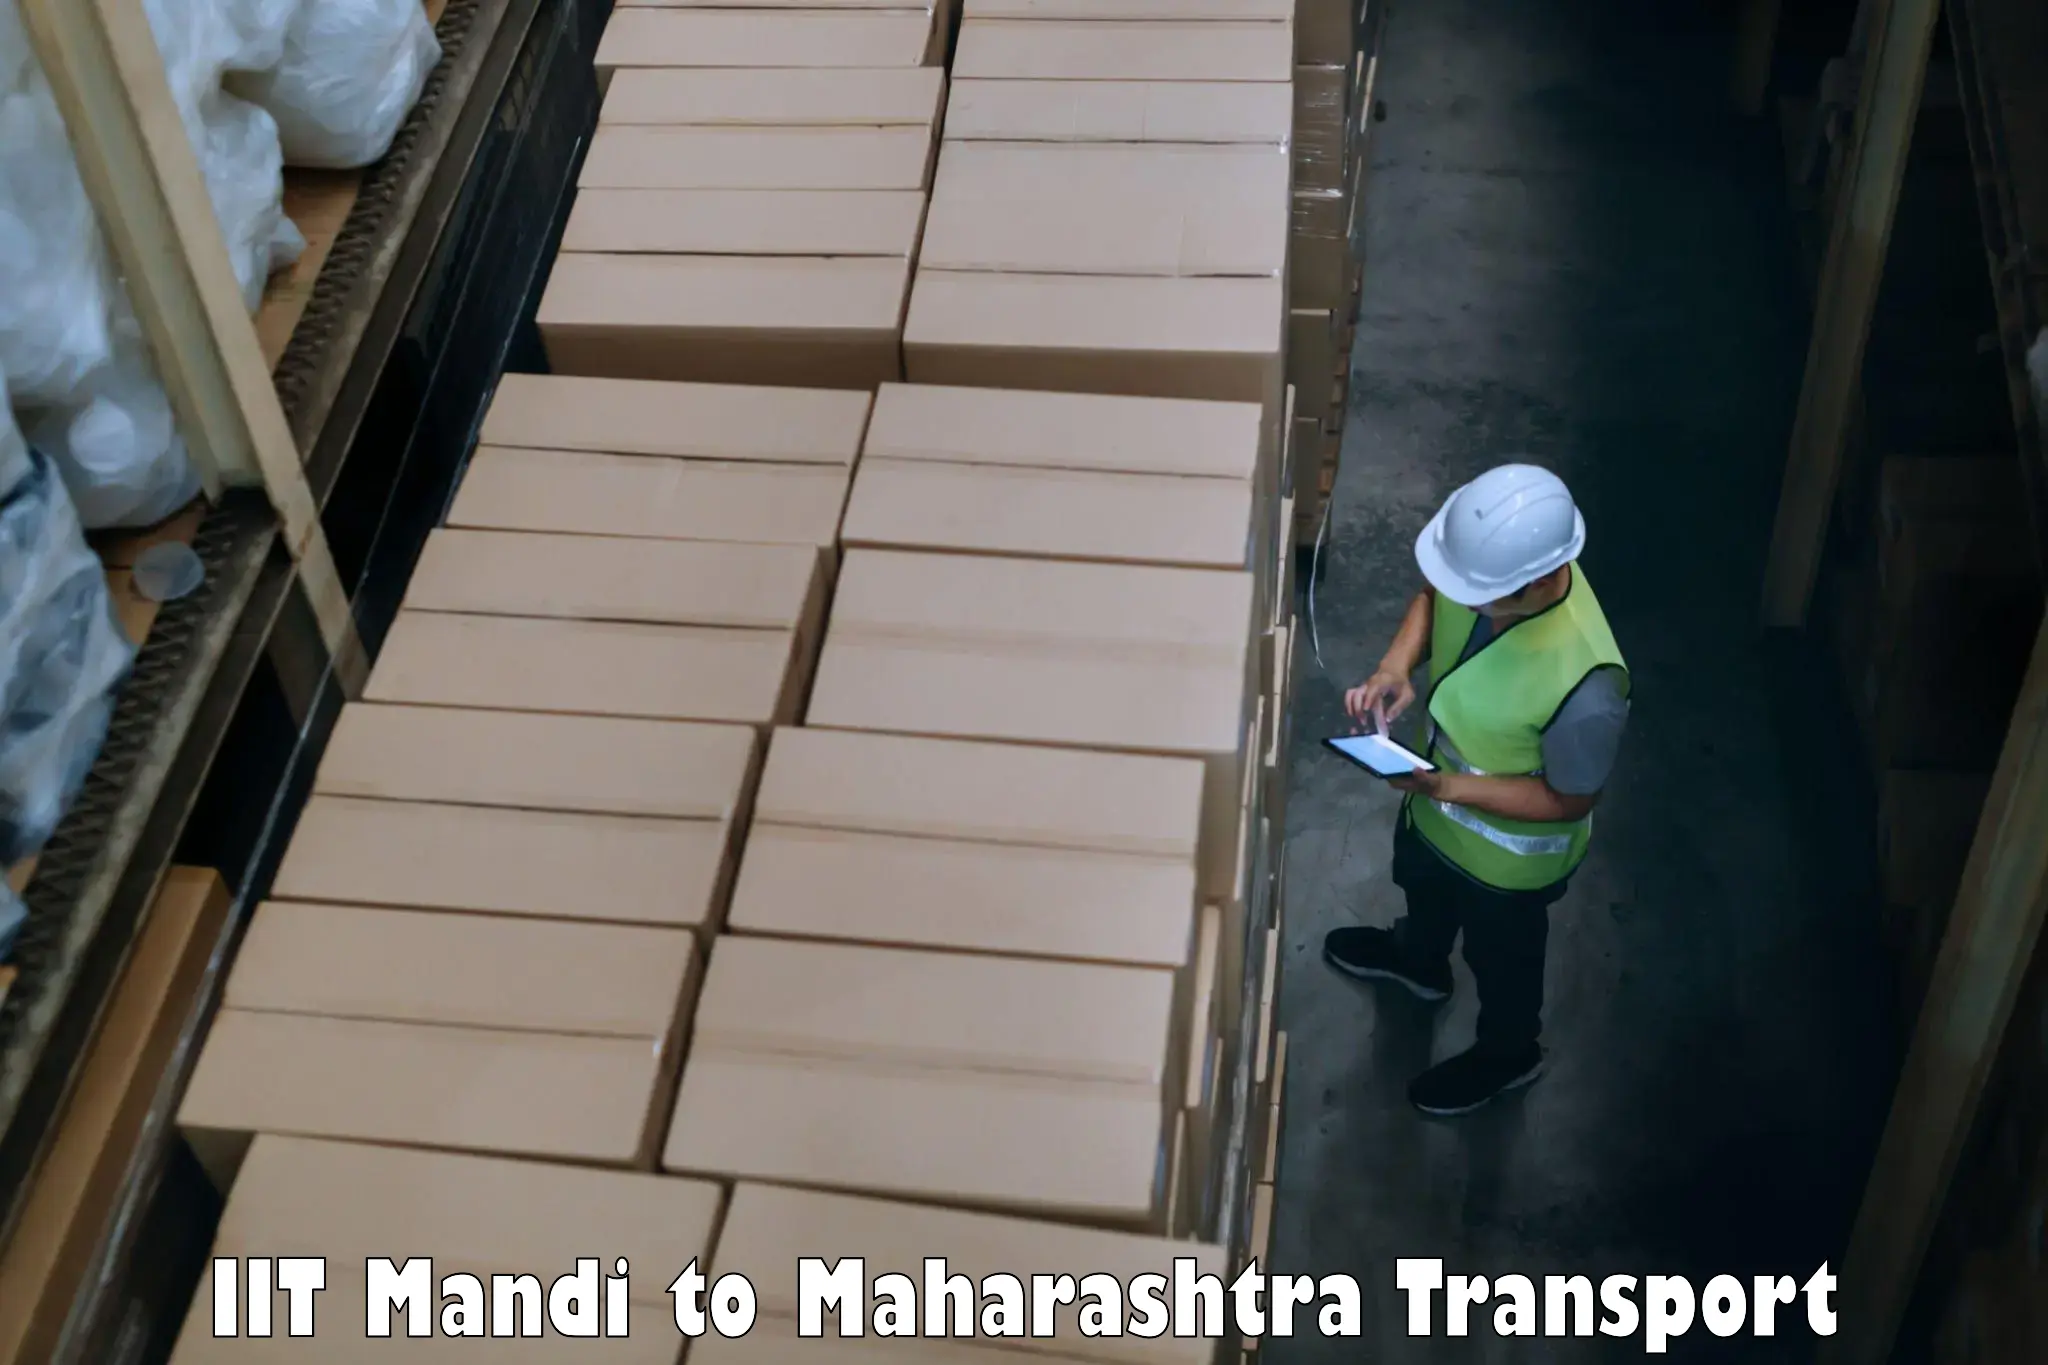 All India transport service IIT Mandi to Wani